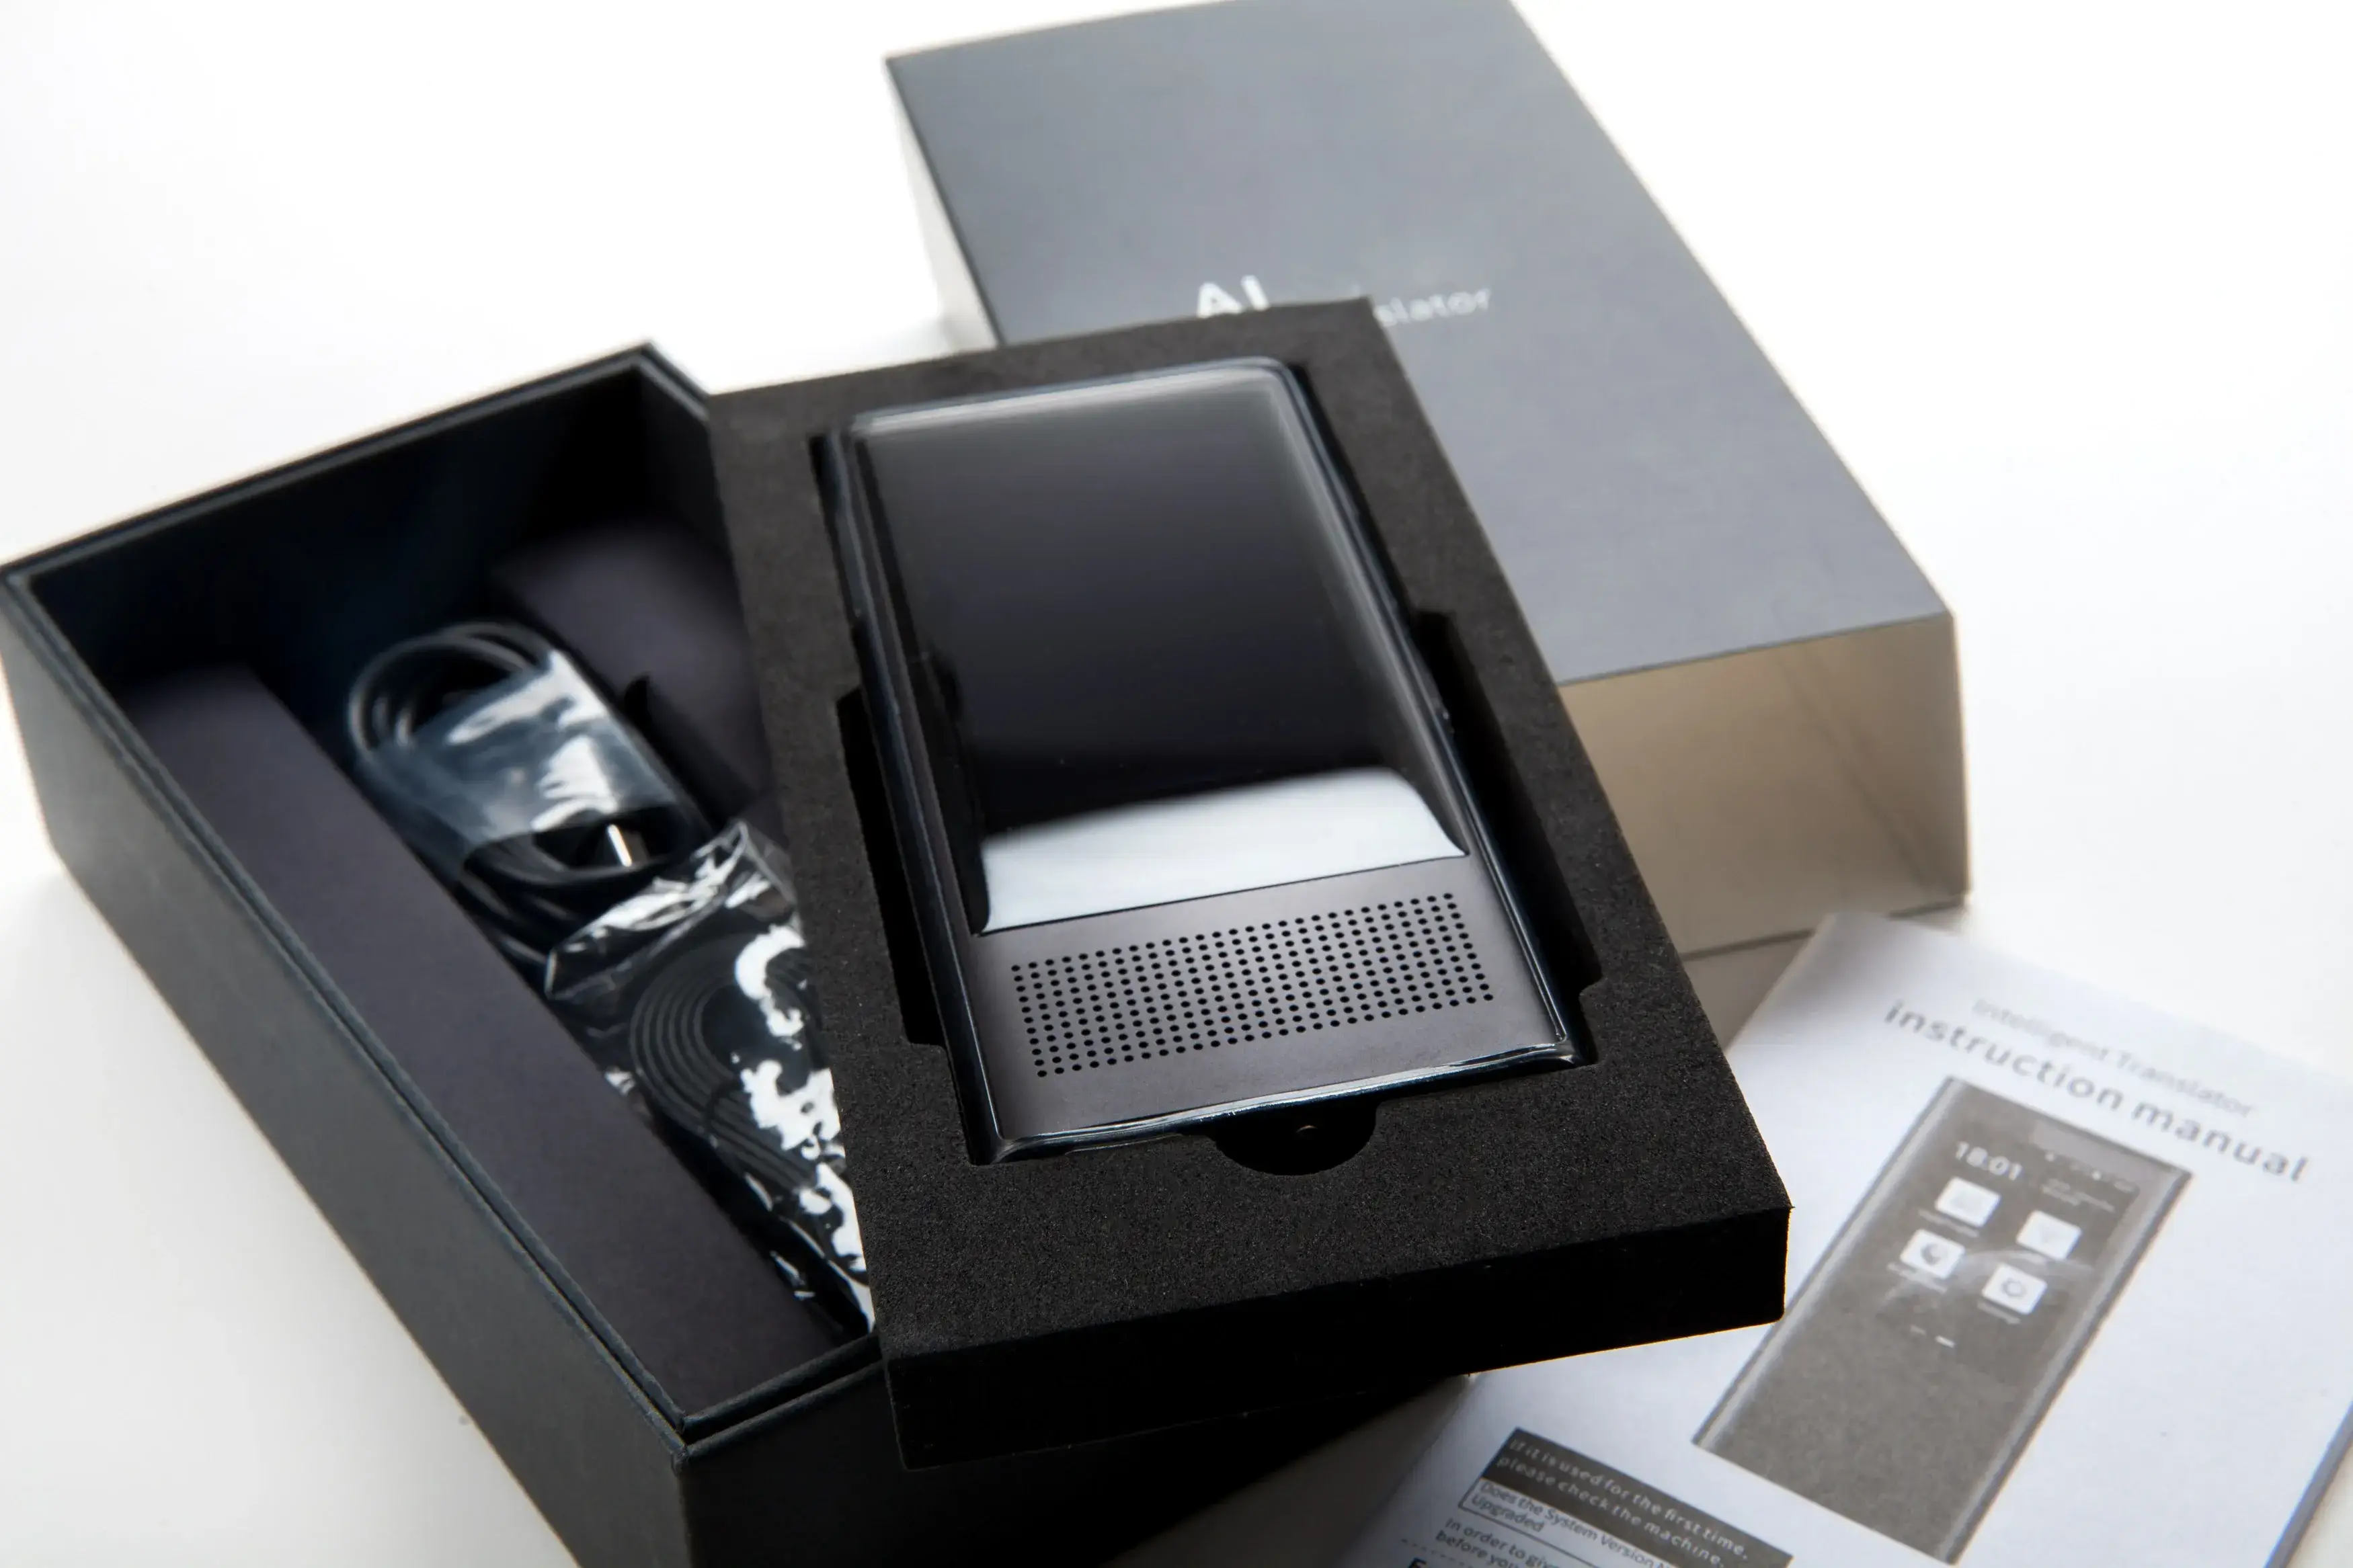 KI-Gesprächs- und Bild-Übersetzungsgerät in einer offenen schwarzen Box und einem Buch mit Anweisungen.